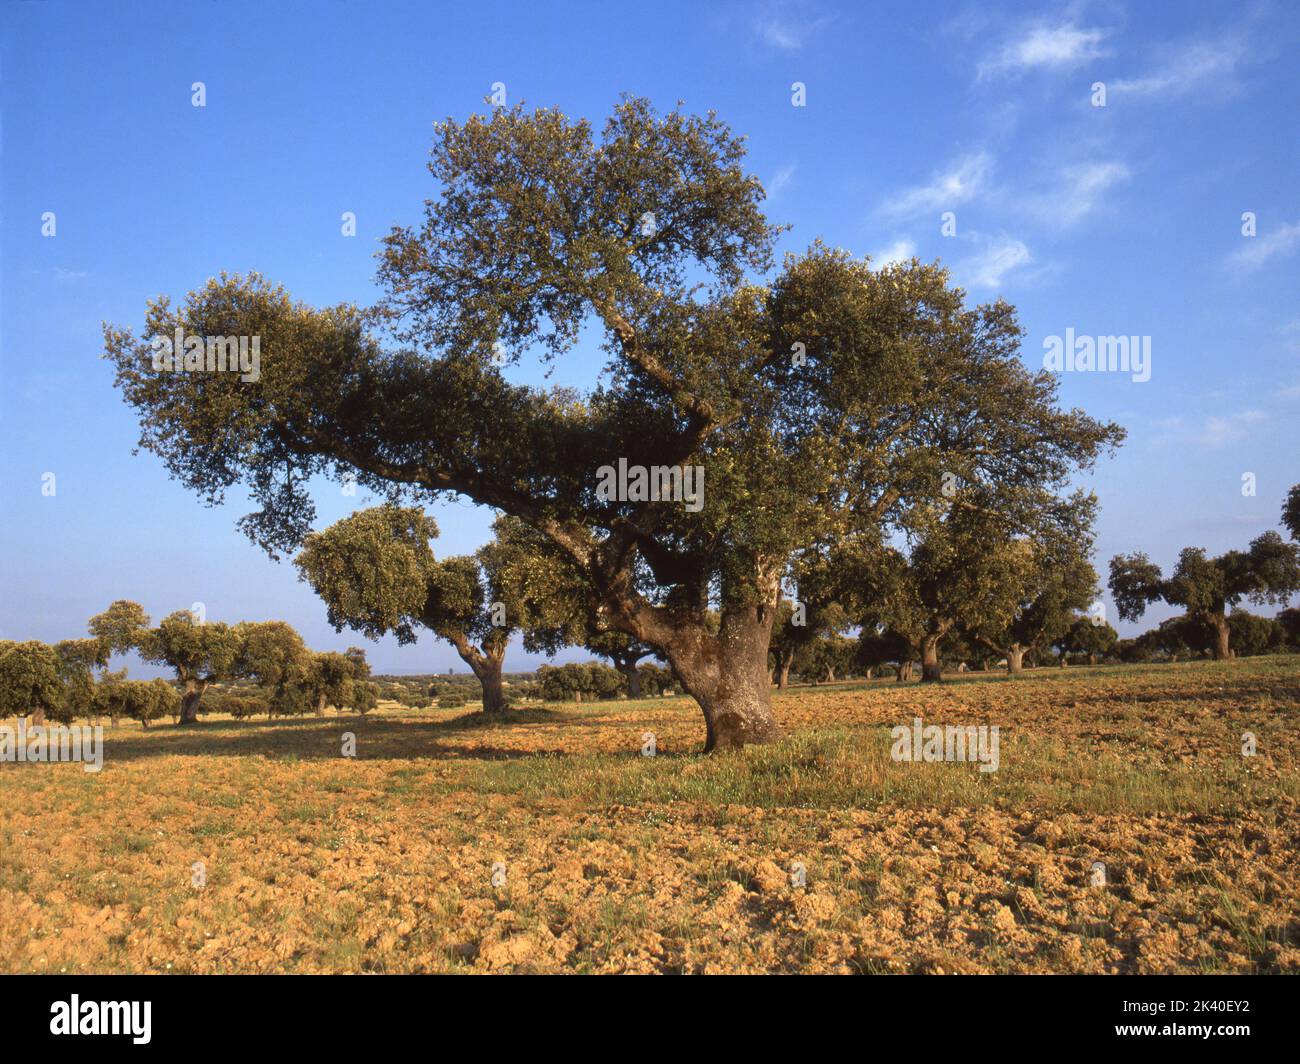 Roble Holm, Roble Evergreen, Roble Holly, Roble Evergreen (Quercus ilex), Pastos con encinas , España, Extremadura Foto de stock